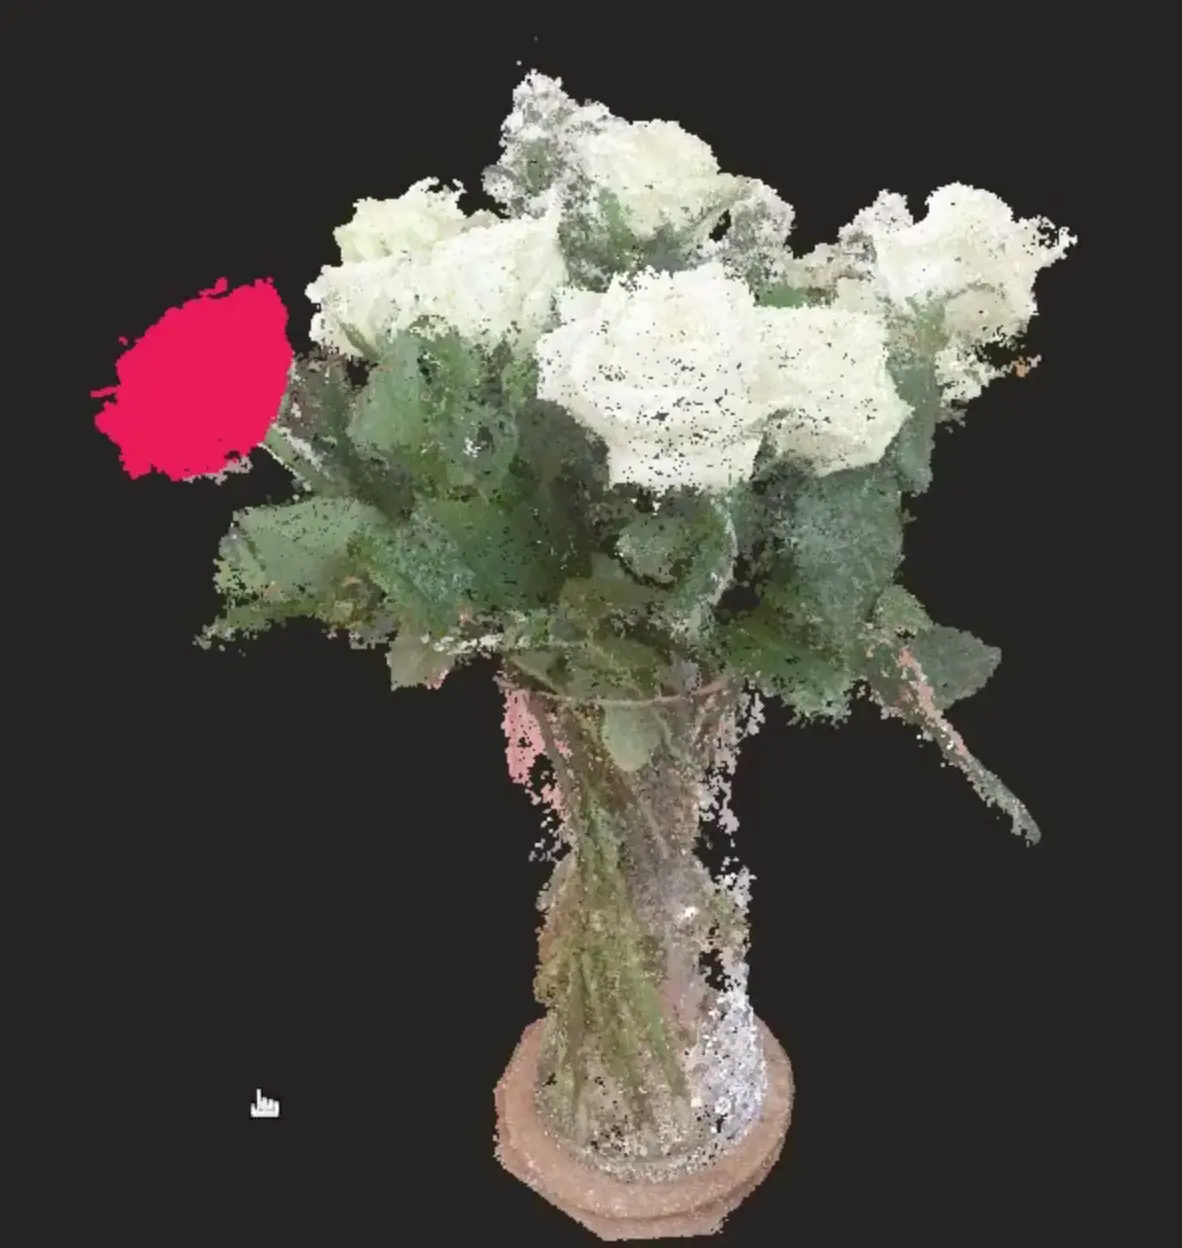 Flowers 3D point cloud segmentation